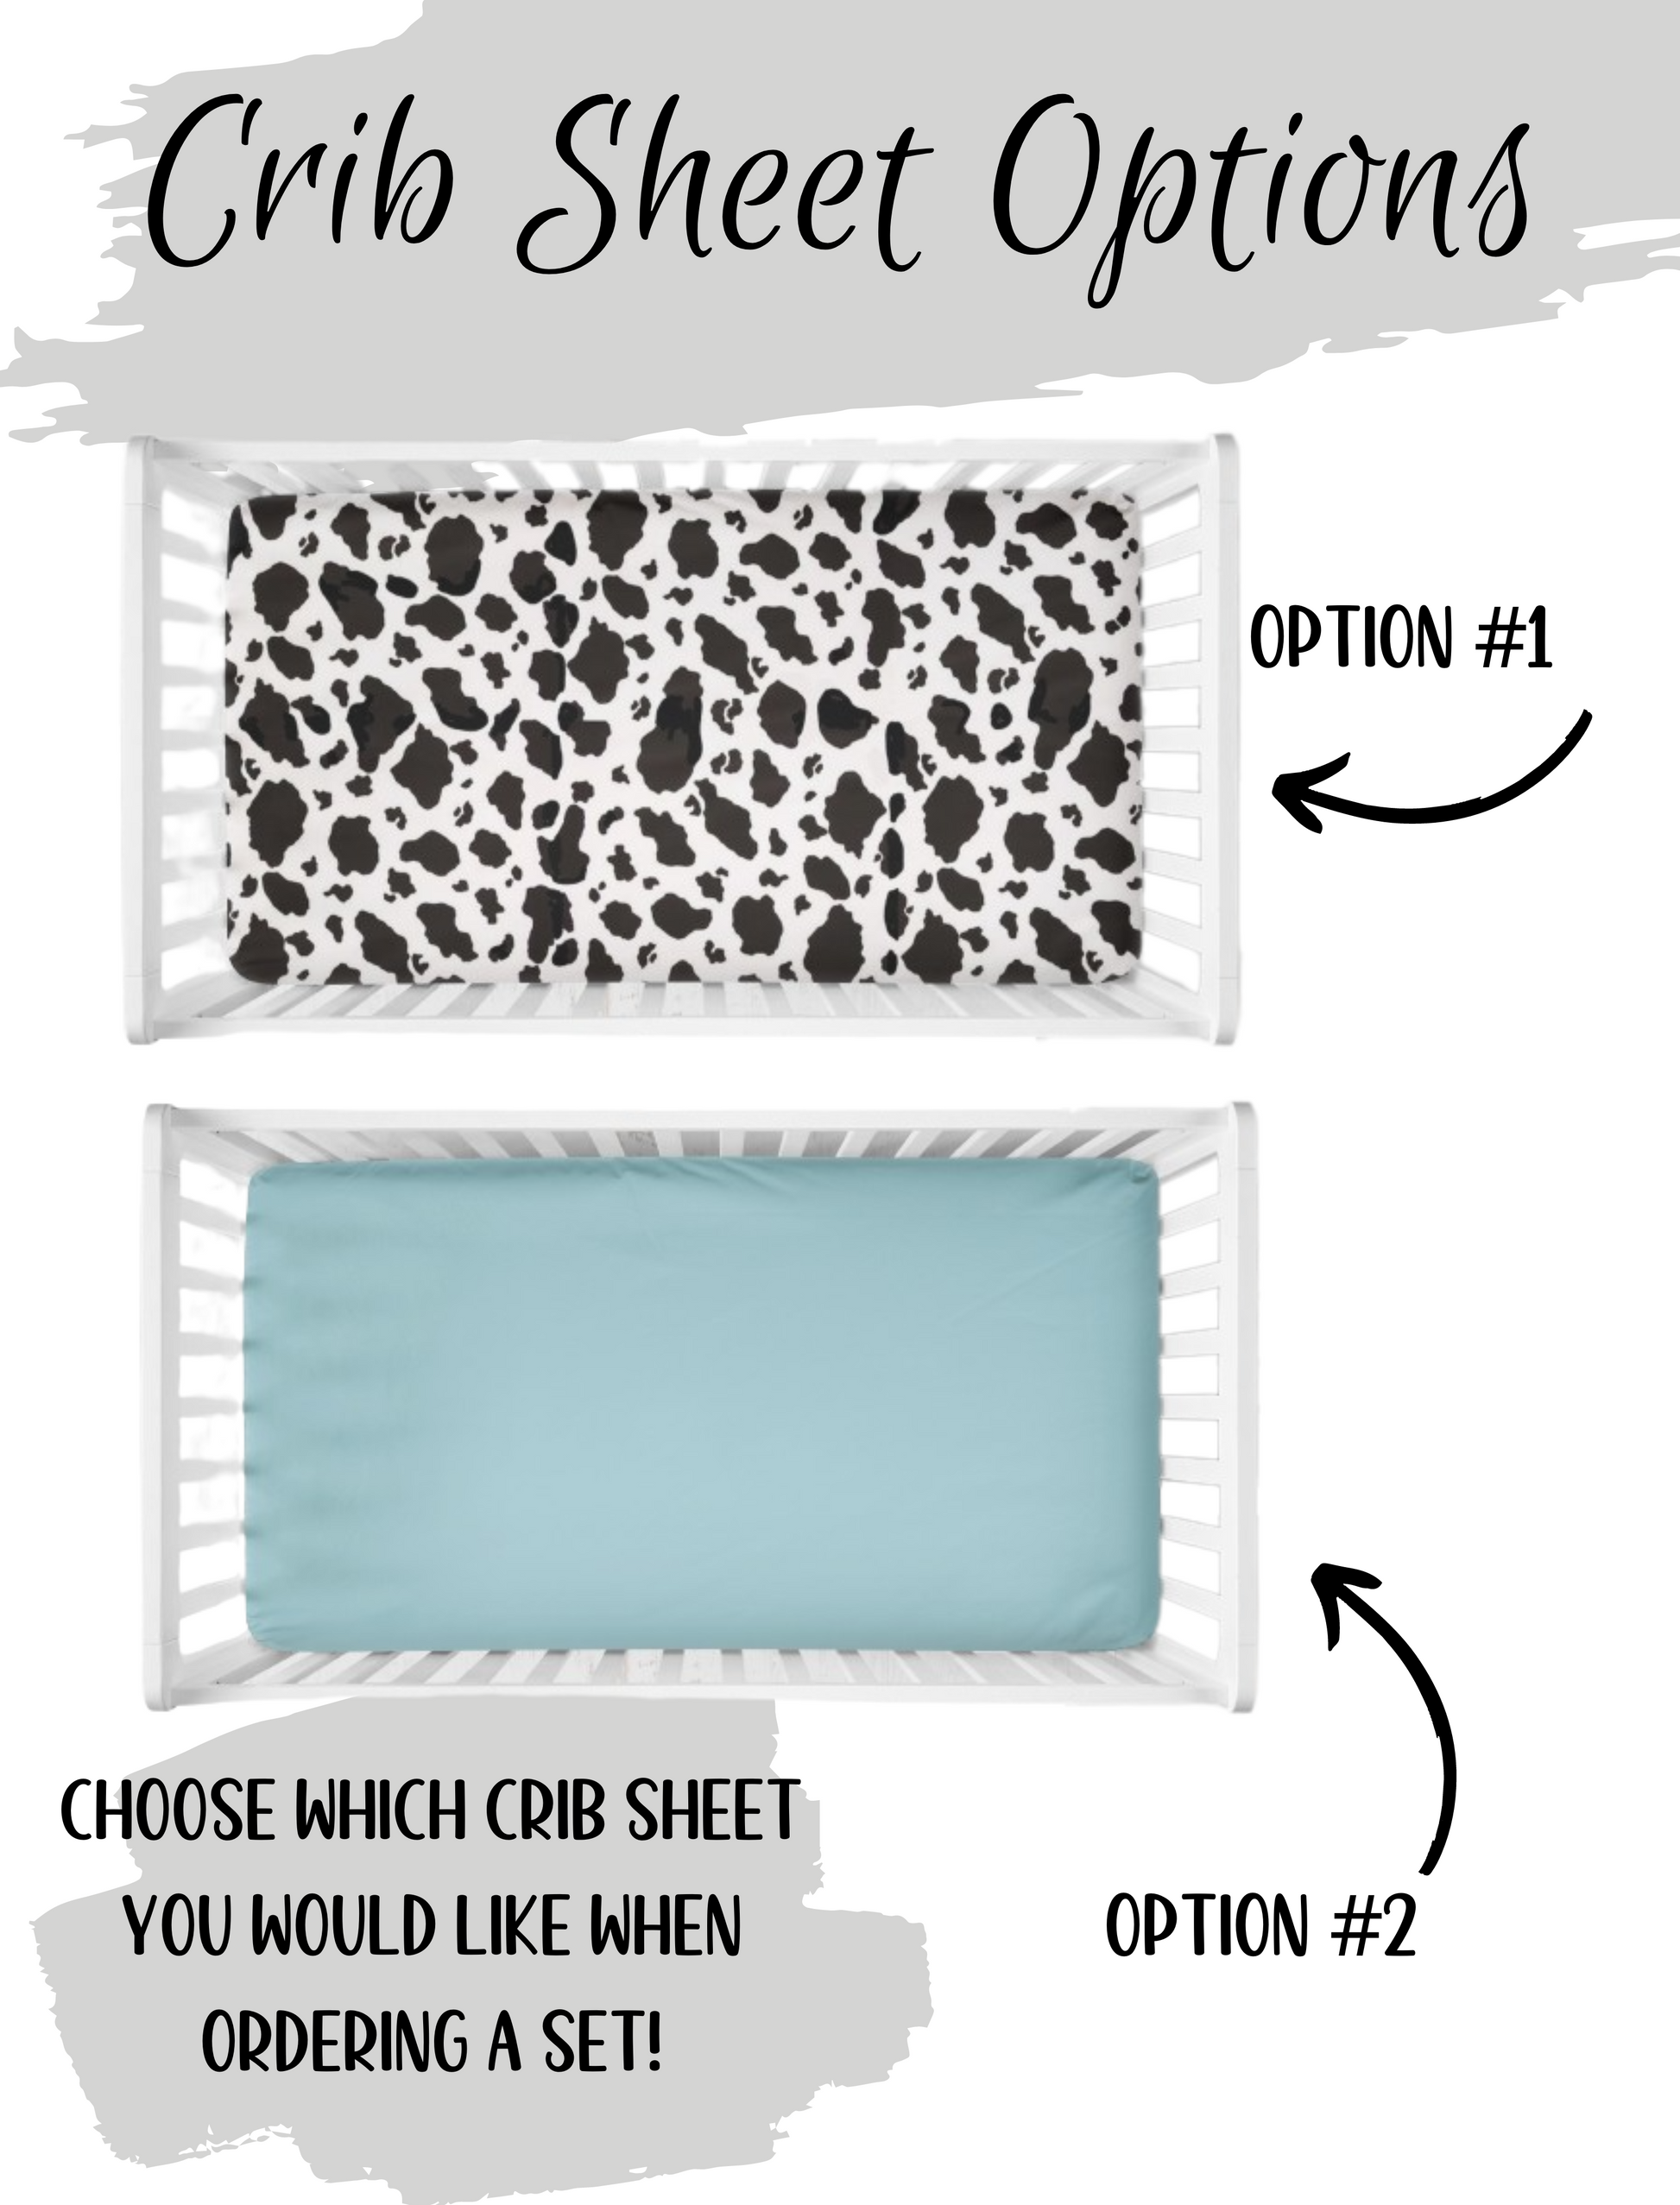 you pick crib sheet - cow print crib sheet or aqua crib sheet